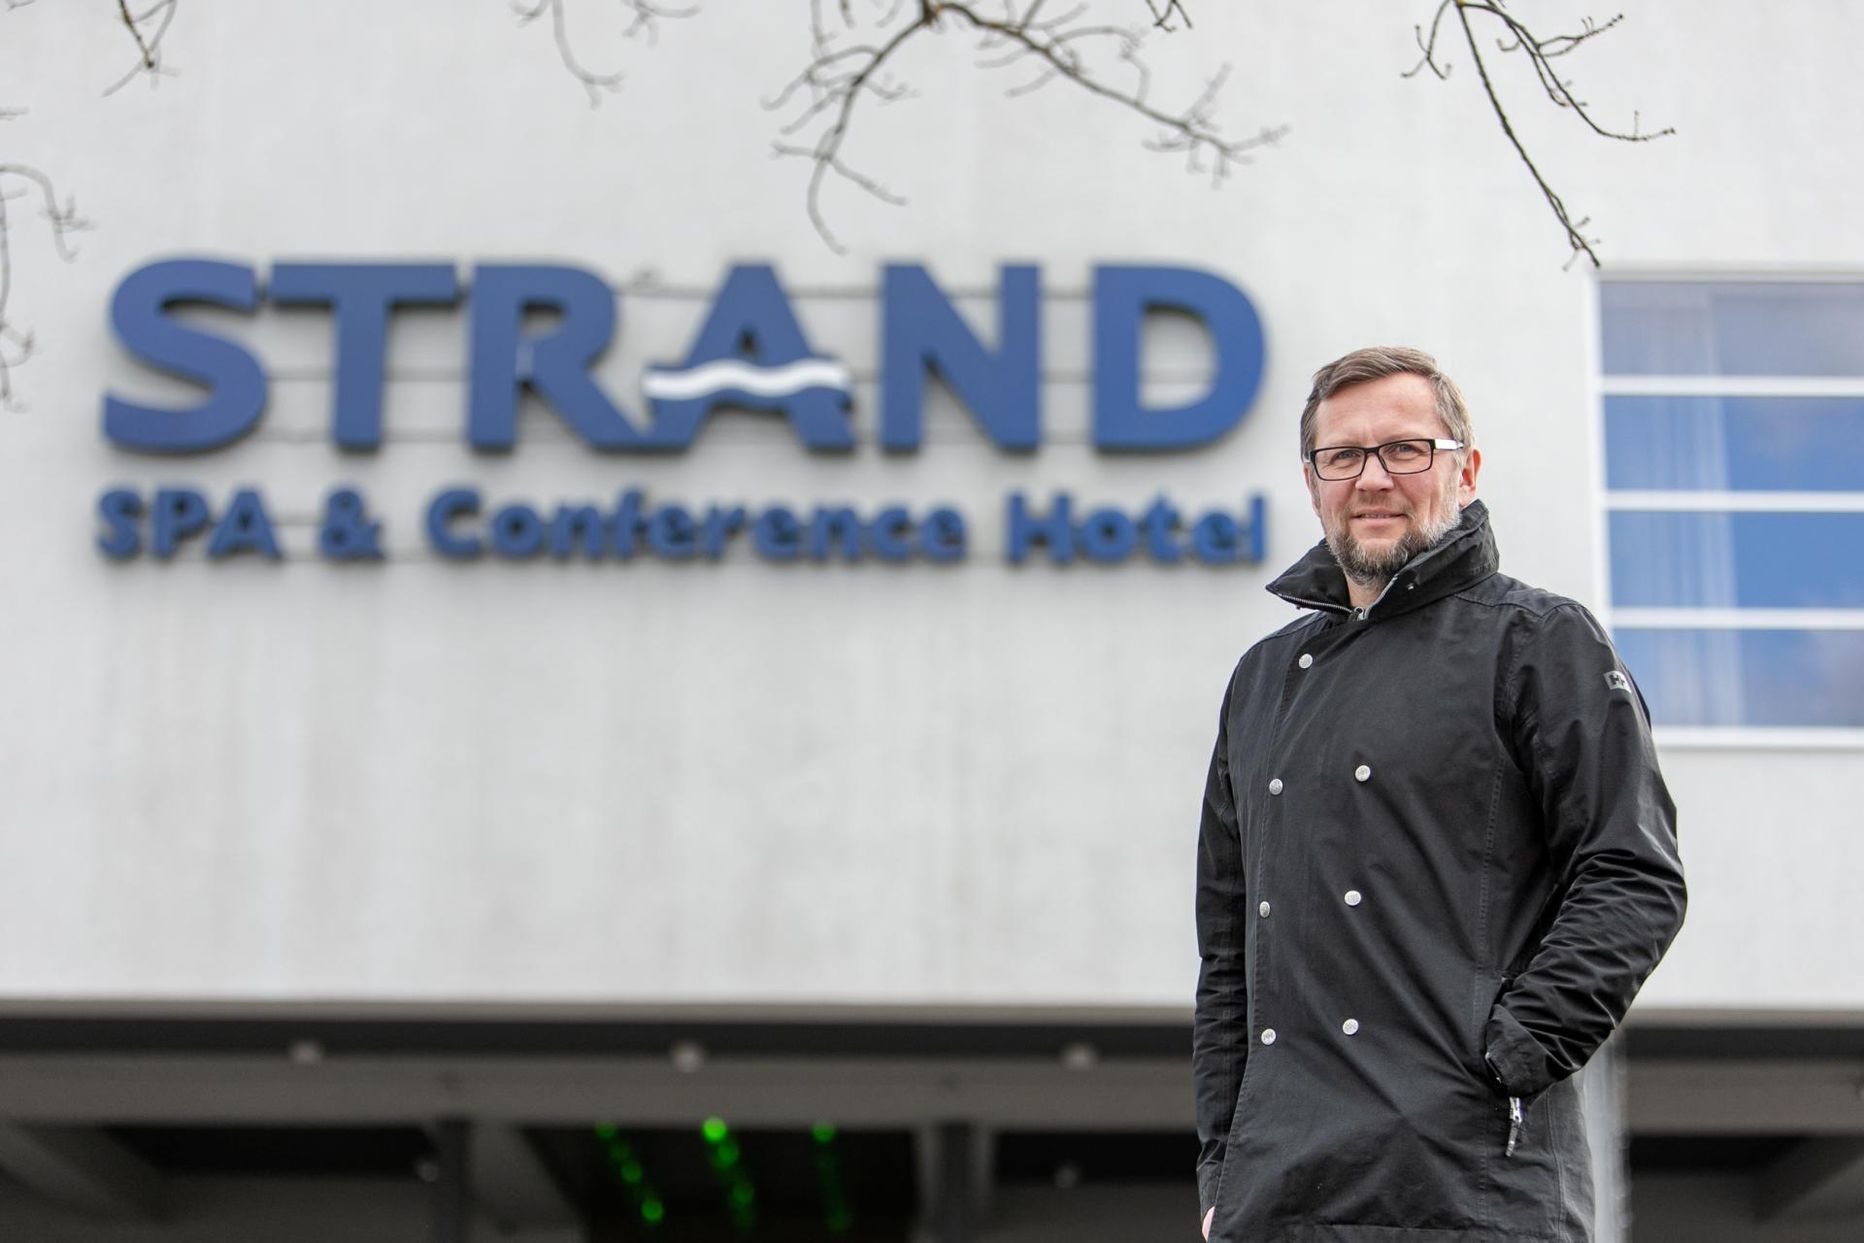 Strandi spaa- ja konverentsihotelli tegevjuhi Indrek Ilvese sõnutsi on ettevõte tänavuse aastaga siiani rahule jäänud.